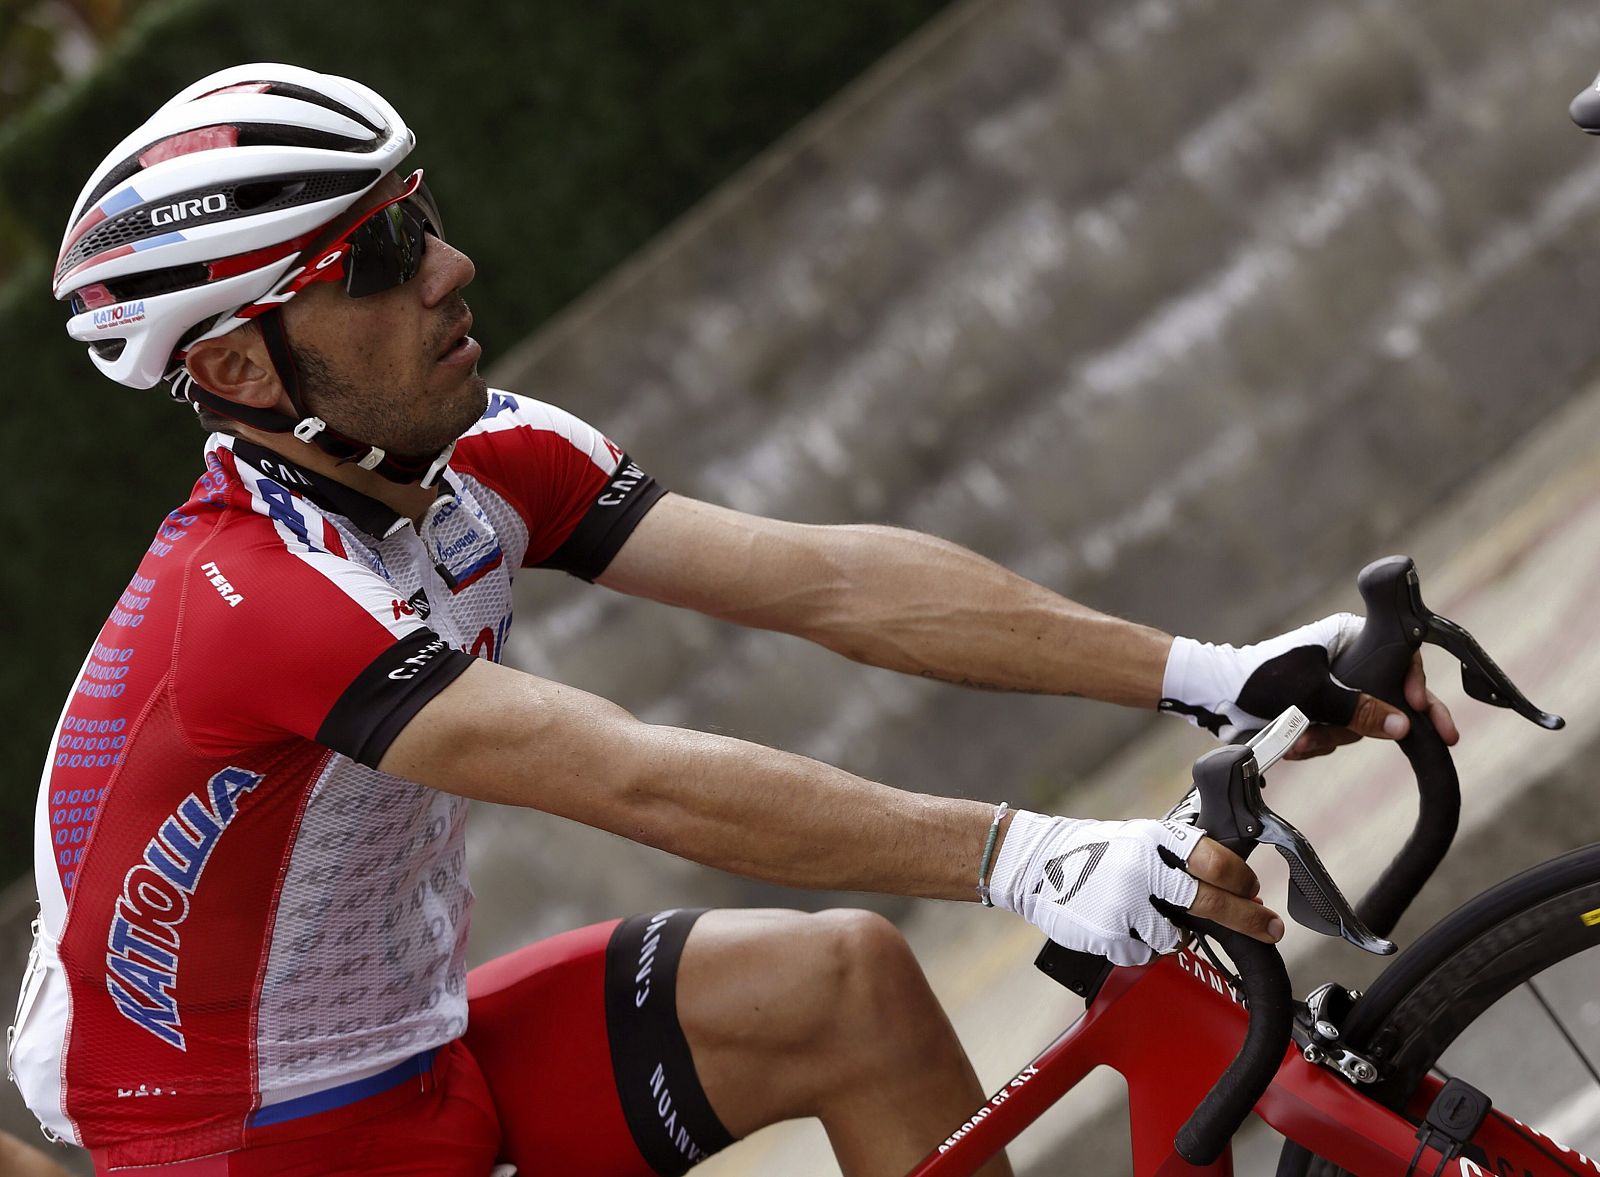 Imagen del ciclista catalán del equipo Katusha Joaquim "Purito" Rodríguez.